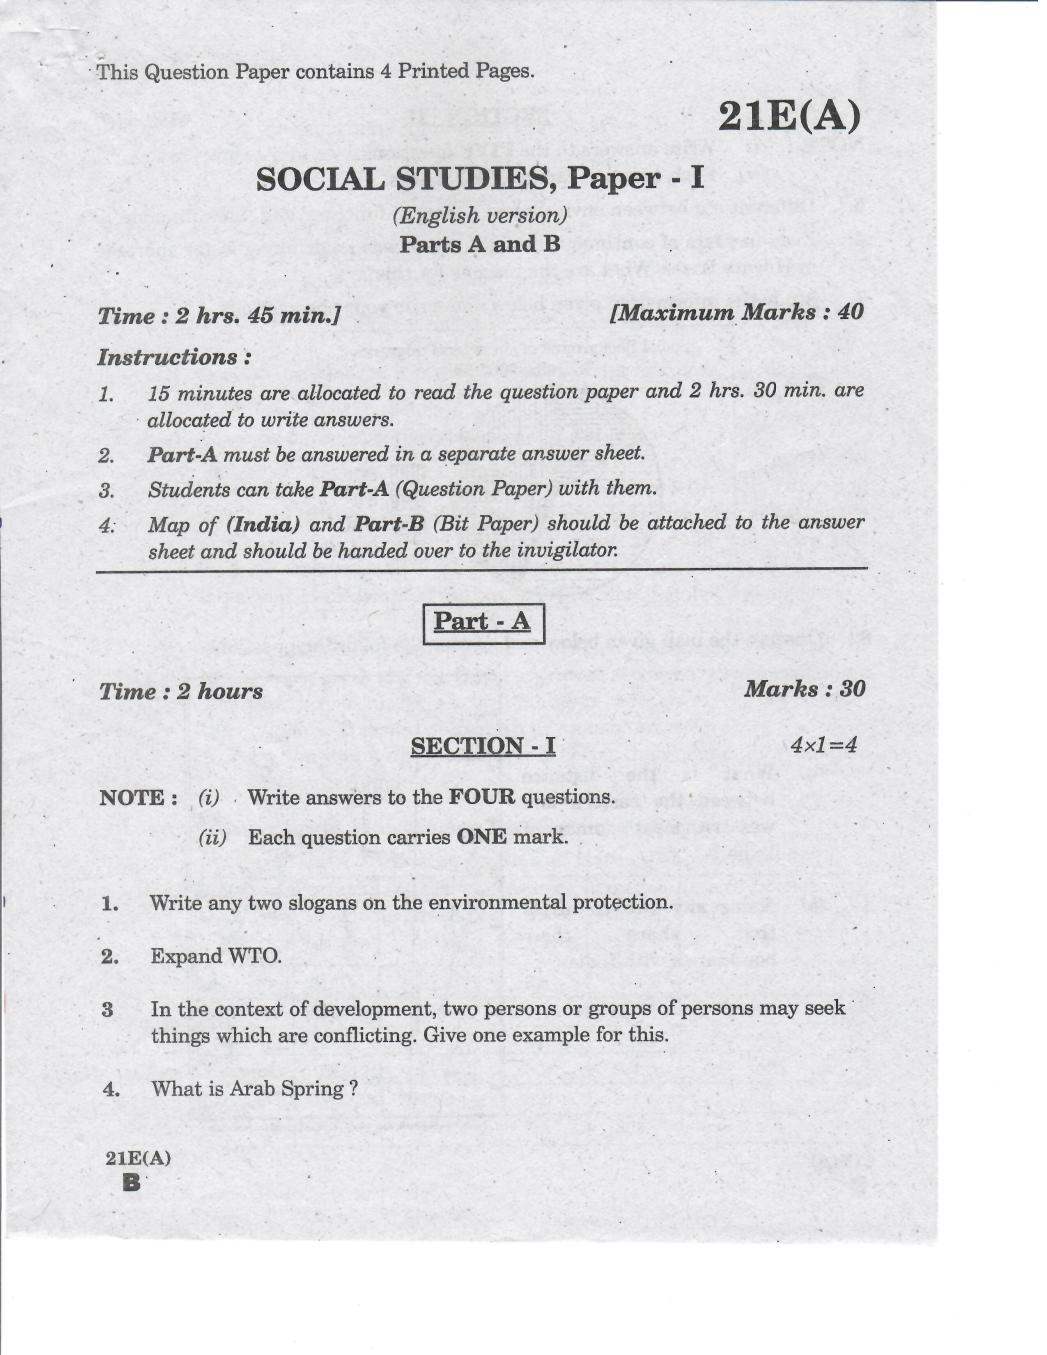 social studies paper 2019